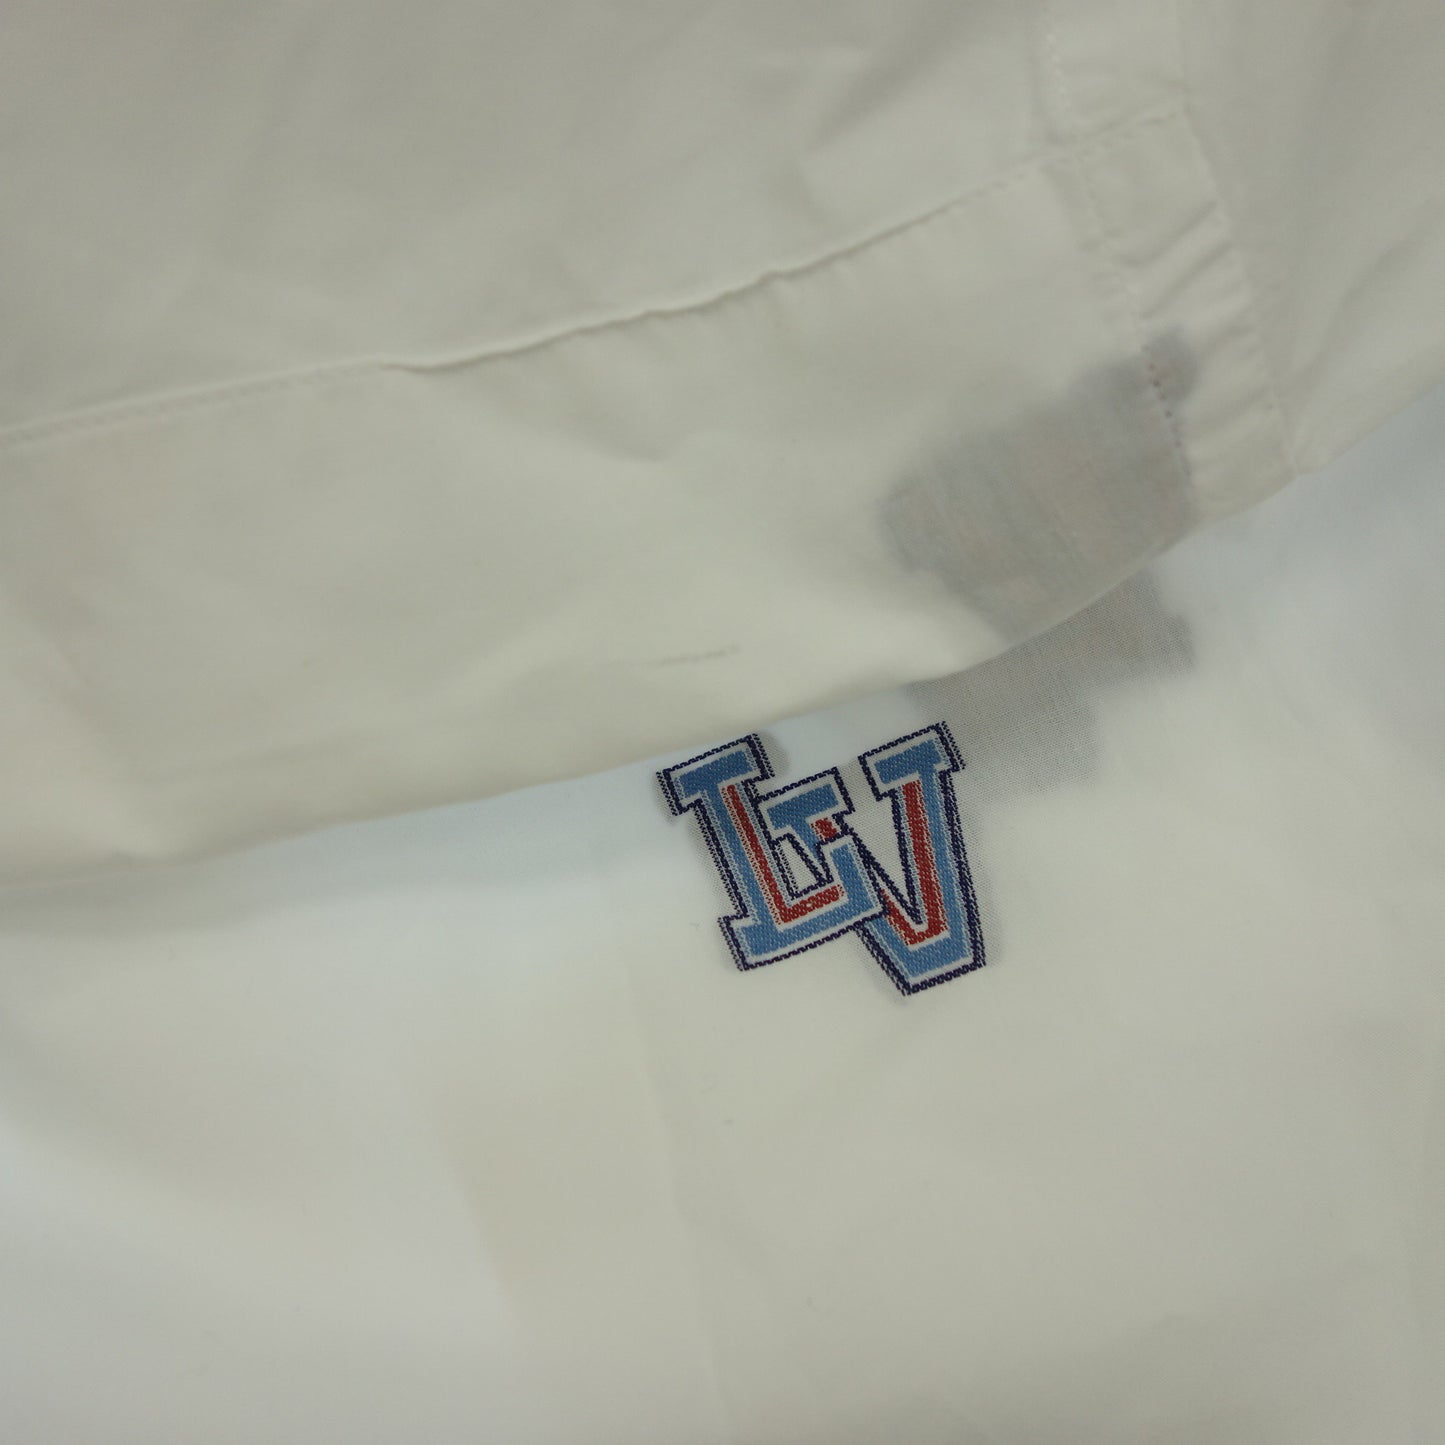 二手 ◆路易威登 长袖衬衫 常规版型 LV 印花男士 白色 尺寸 M LOUIS VUITTON [AFB37] 